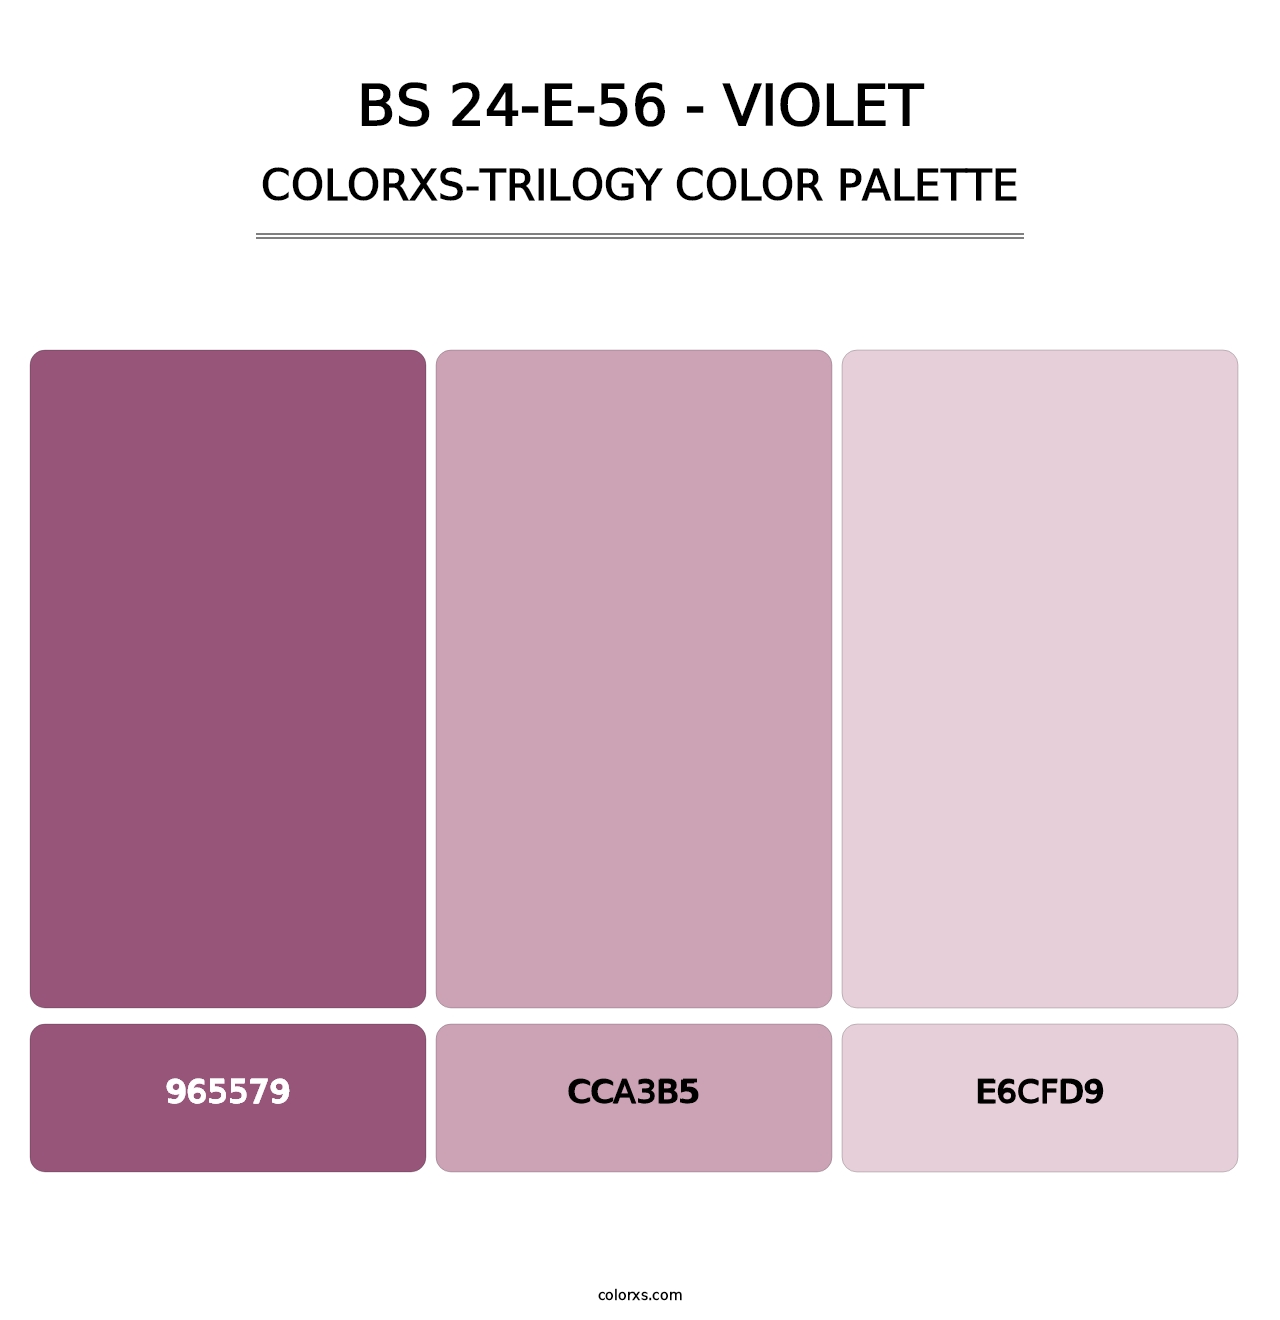 BS 24-E-56 - Violet - Colorxs Trilogy Palette